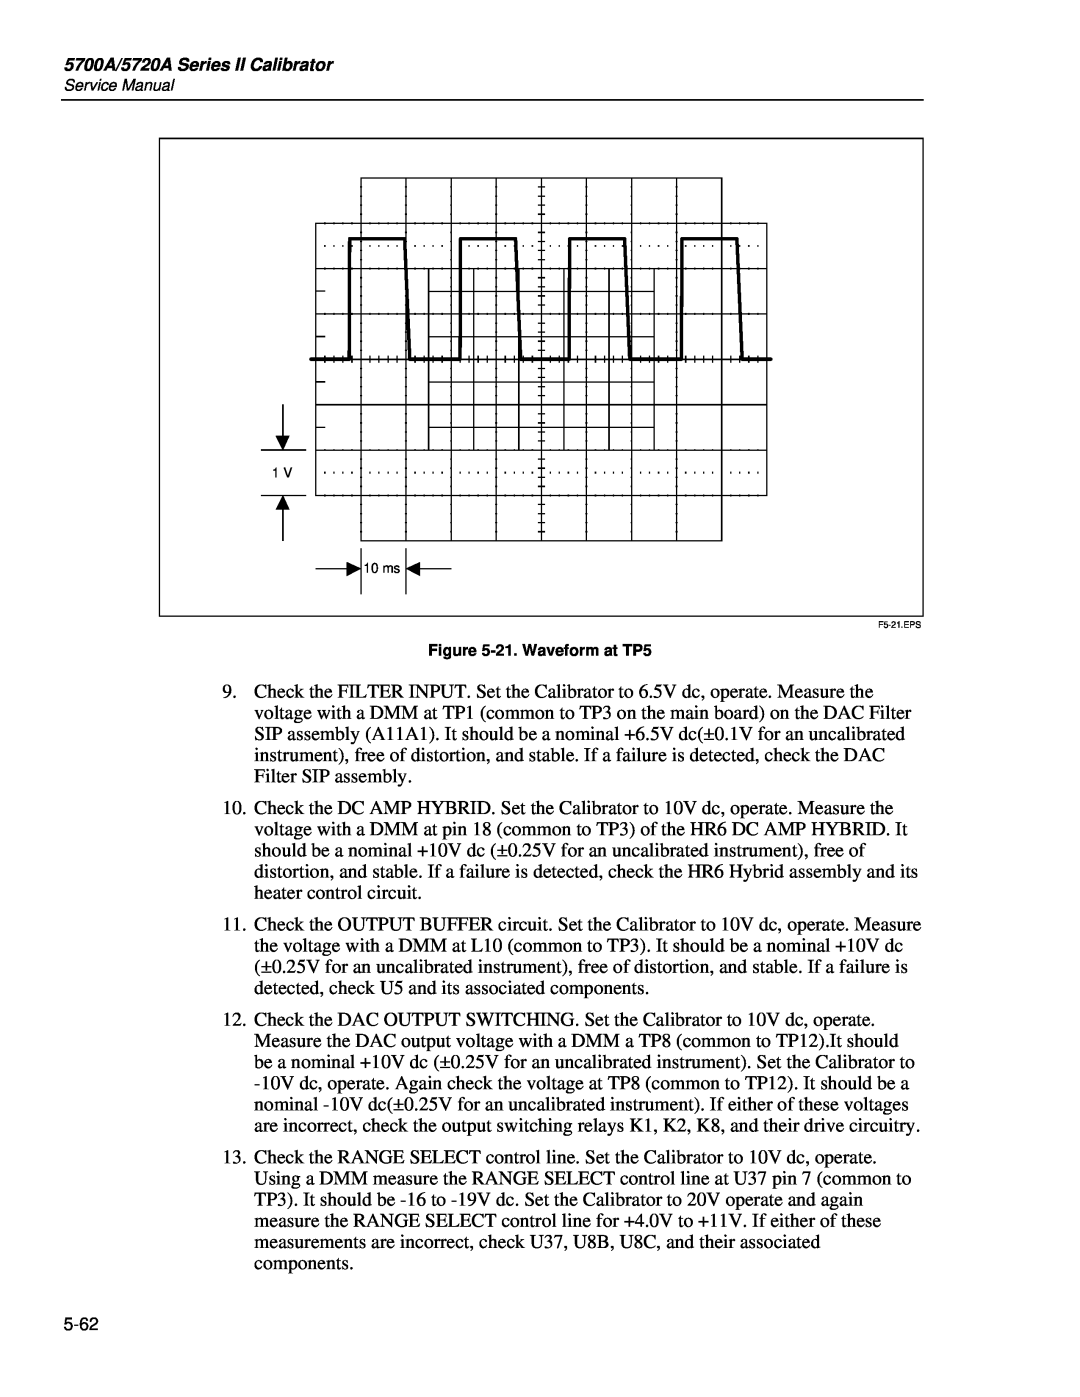 Fluke 5720A service manual 21. Waveform at TP5, F5-21.EPS 